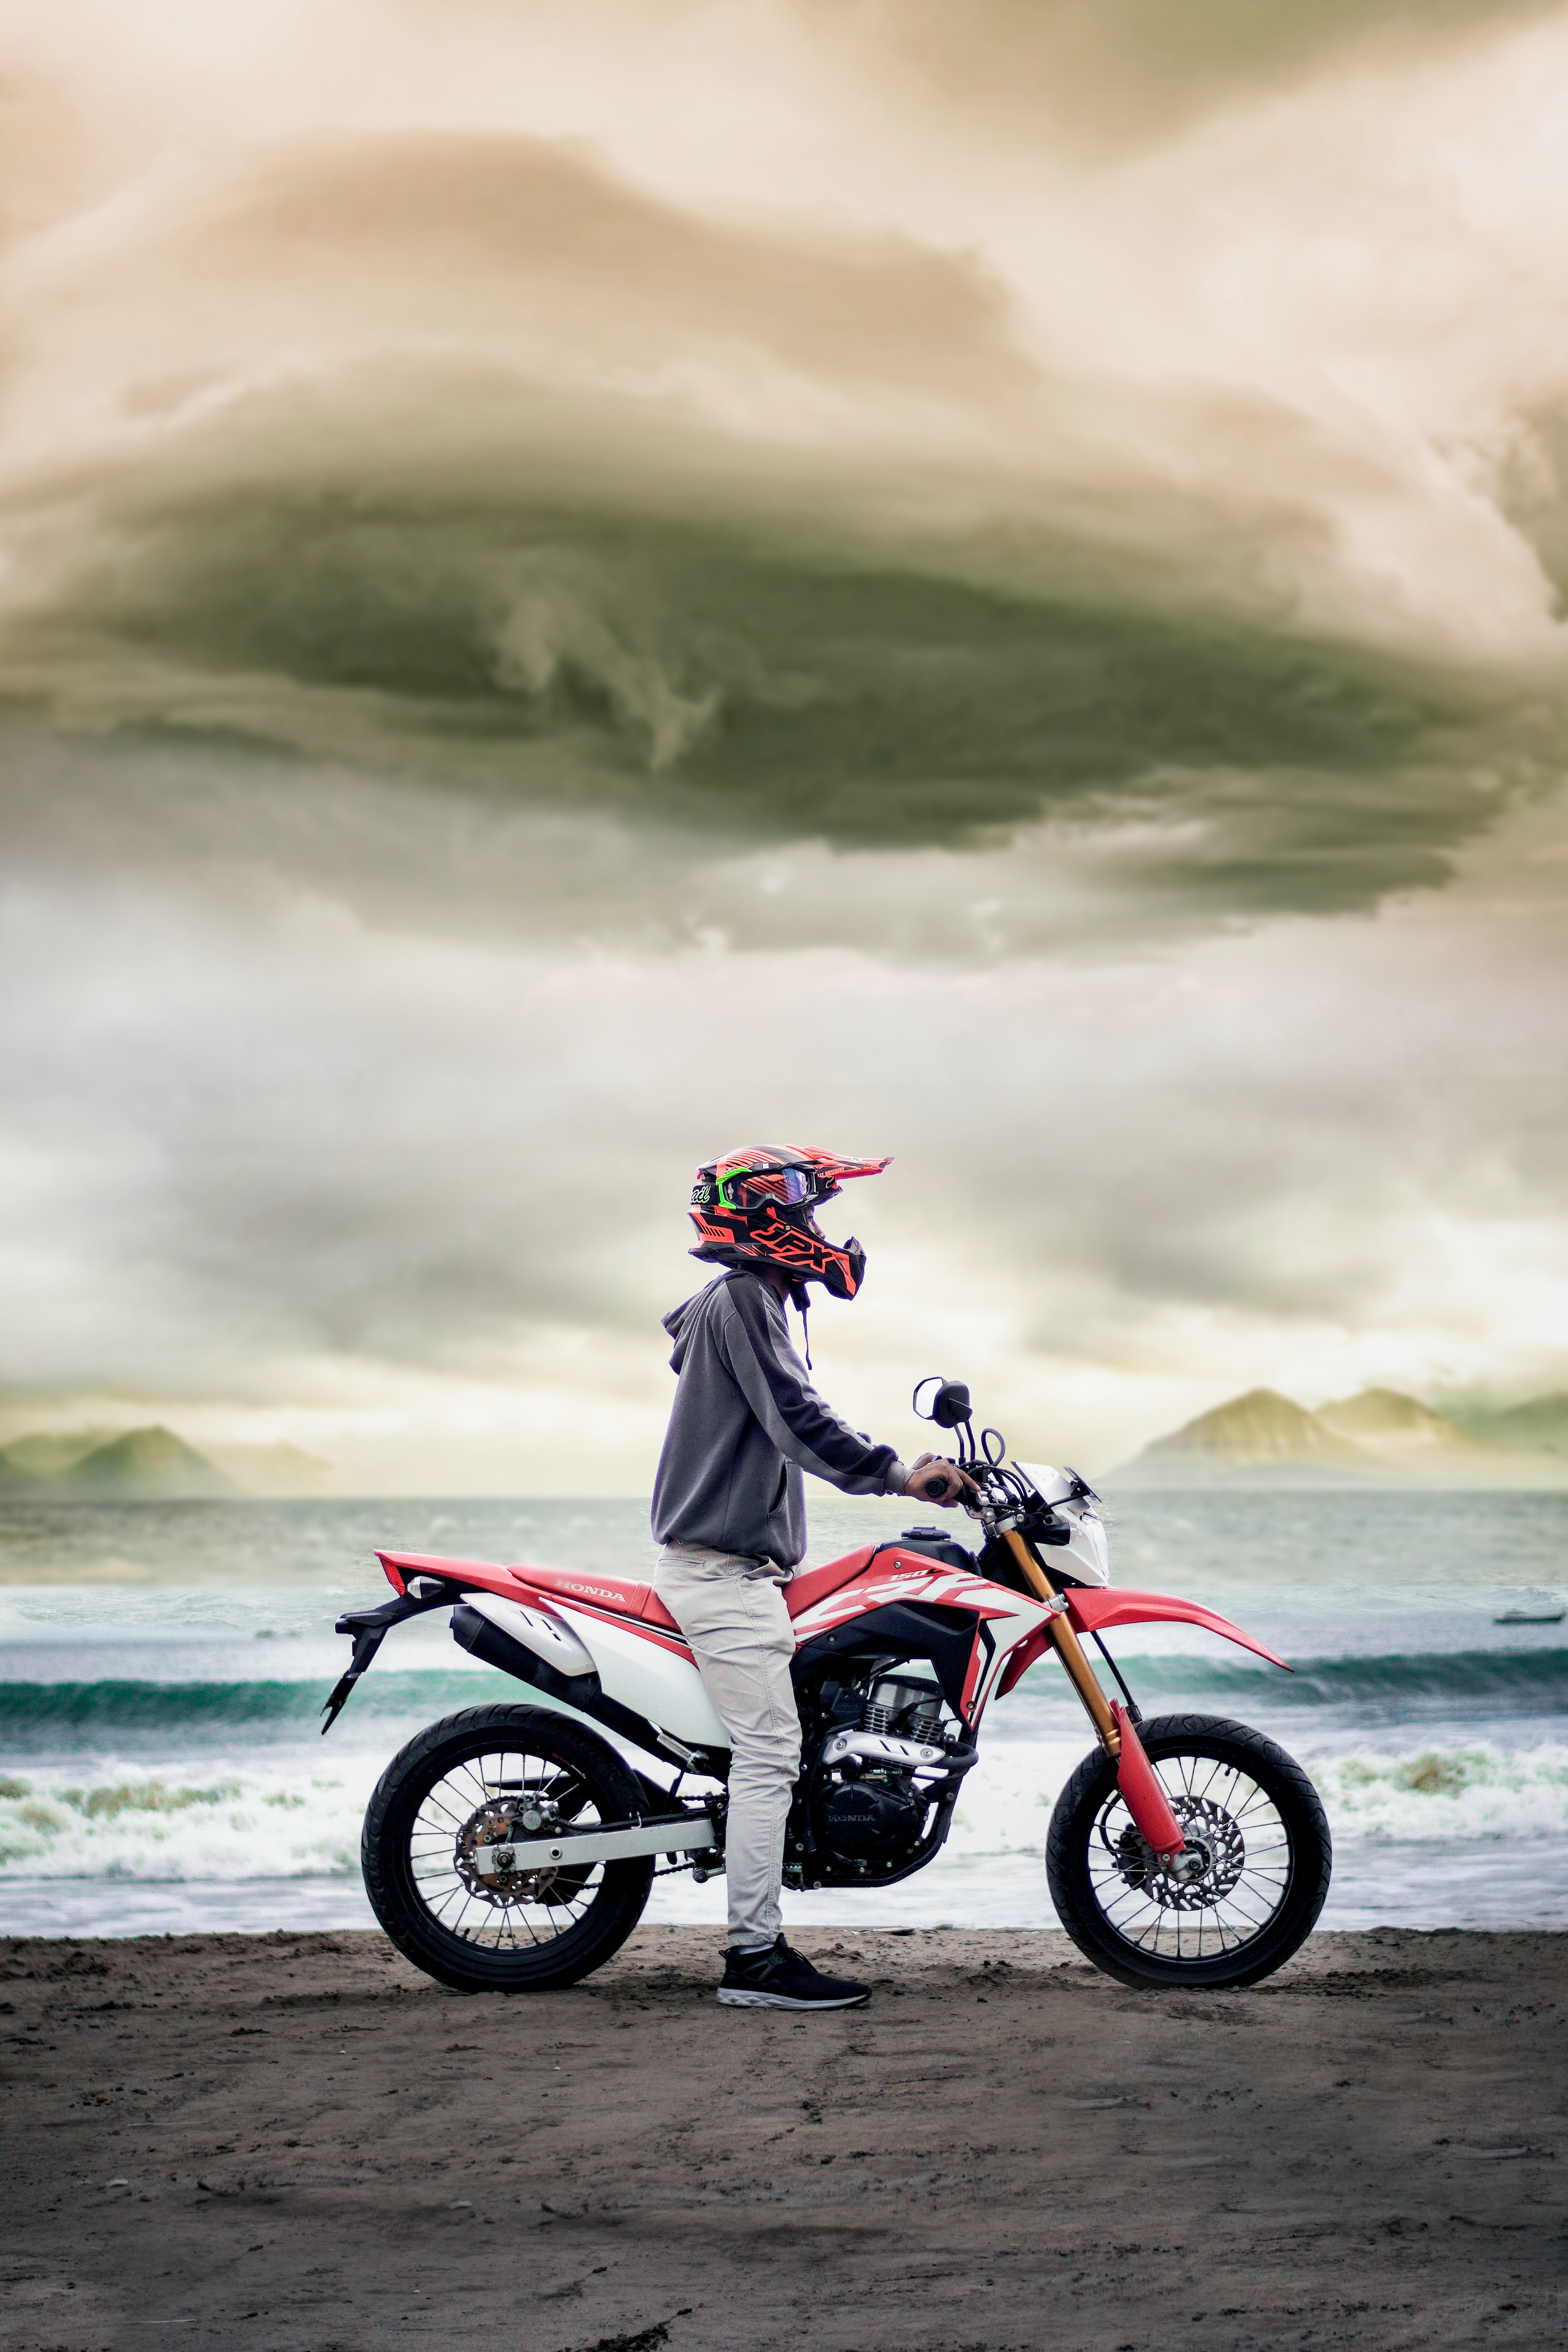 Descarga gratuita de fondo de pantalla para móvil de Motocicleta, Motociclista, Bicicleta, Motocicletas, Playa.